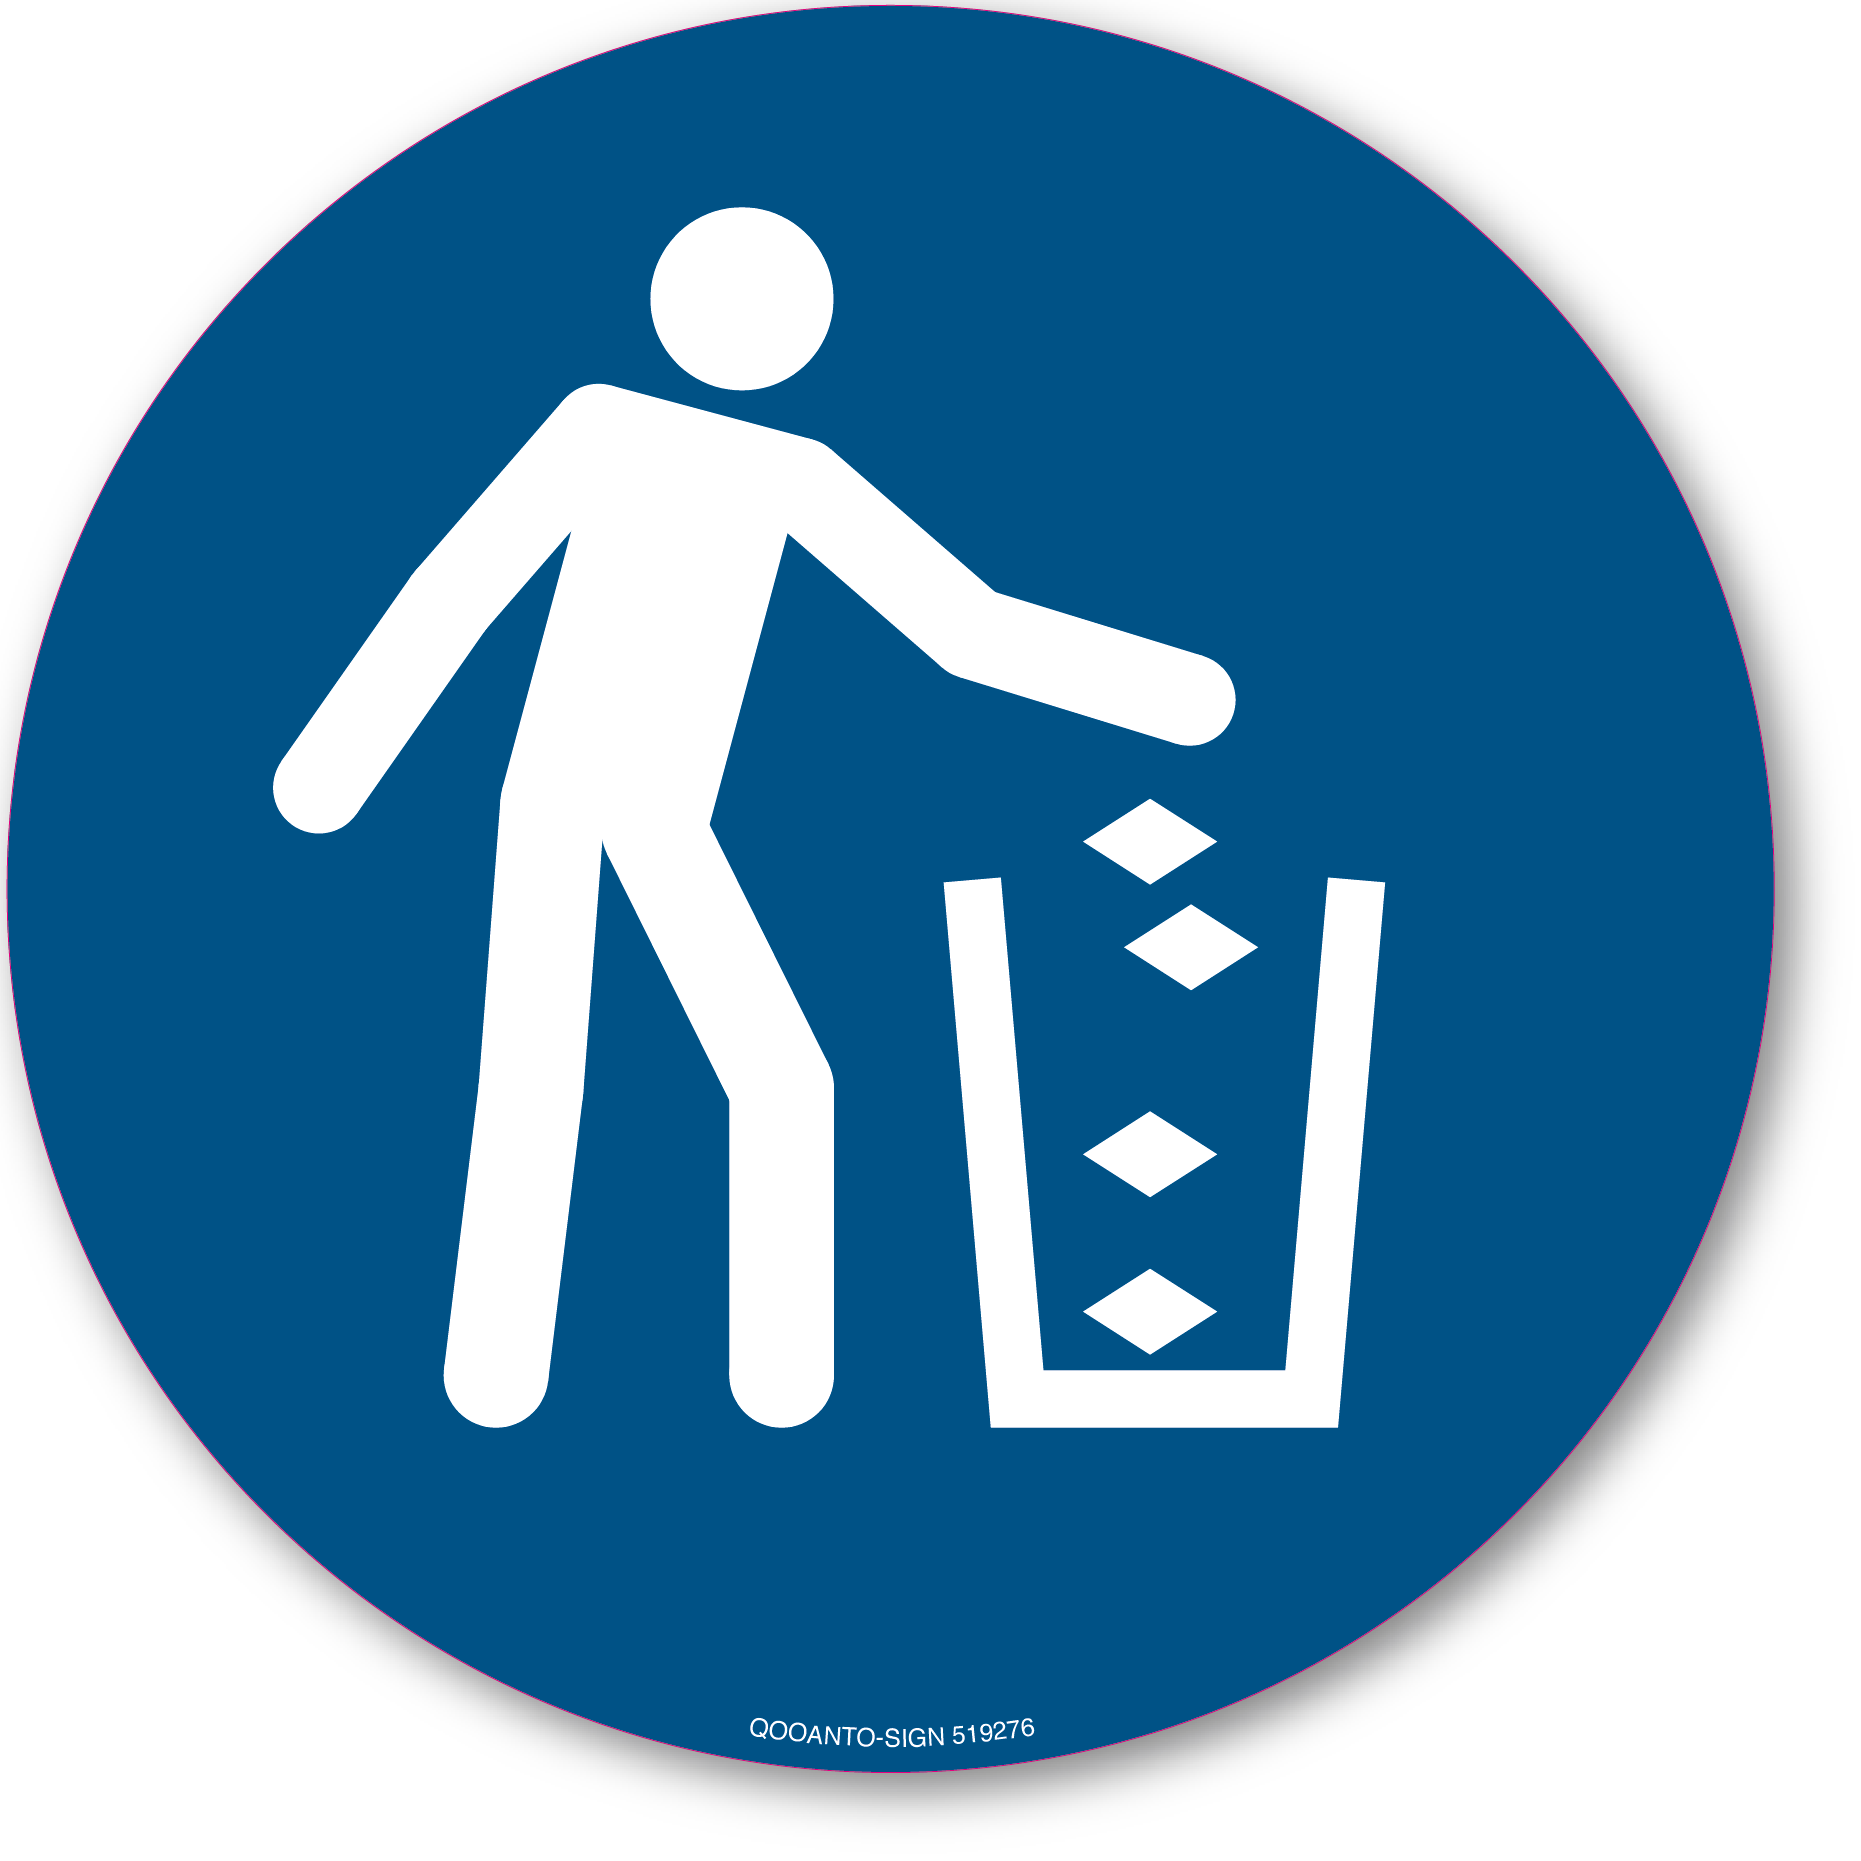 Abfallbehälter benutzen, Schild oder Aufkleber